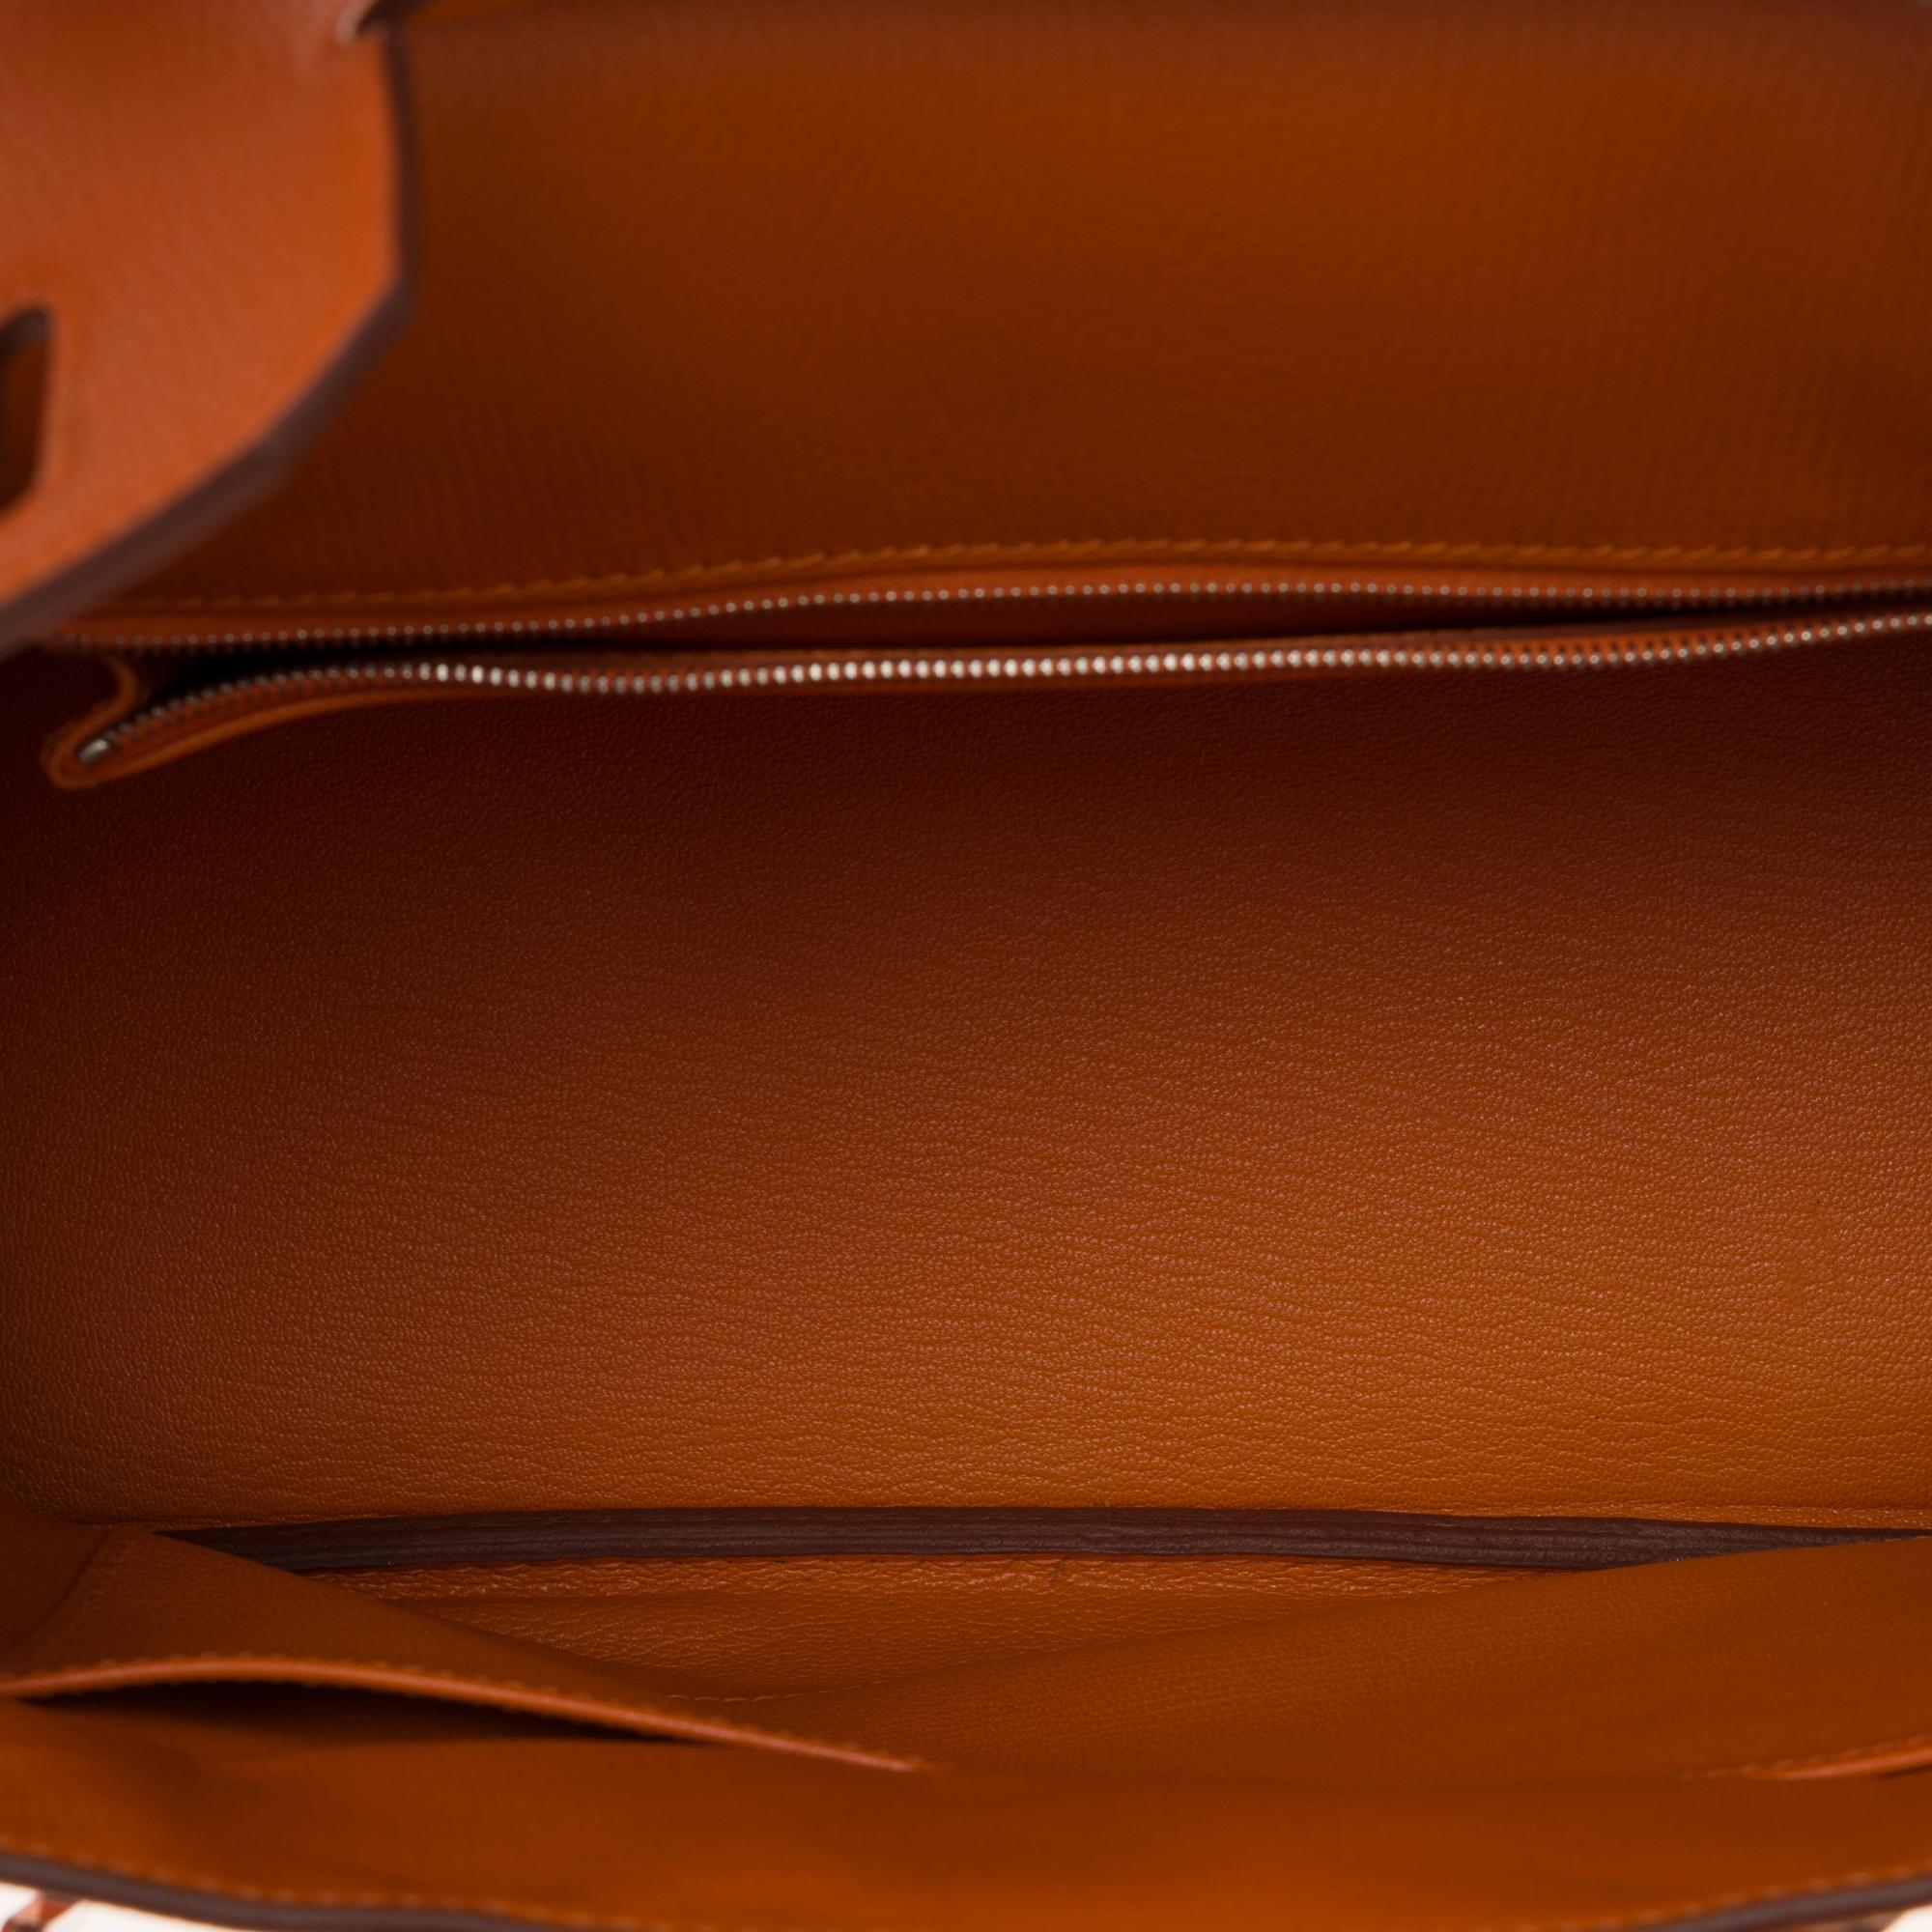 Hermès Birkin 30 handbag in Togo orange leather, PHW, new condition  2